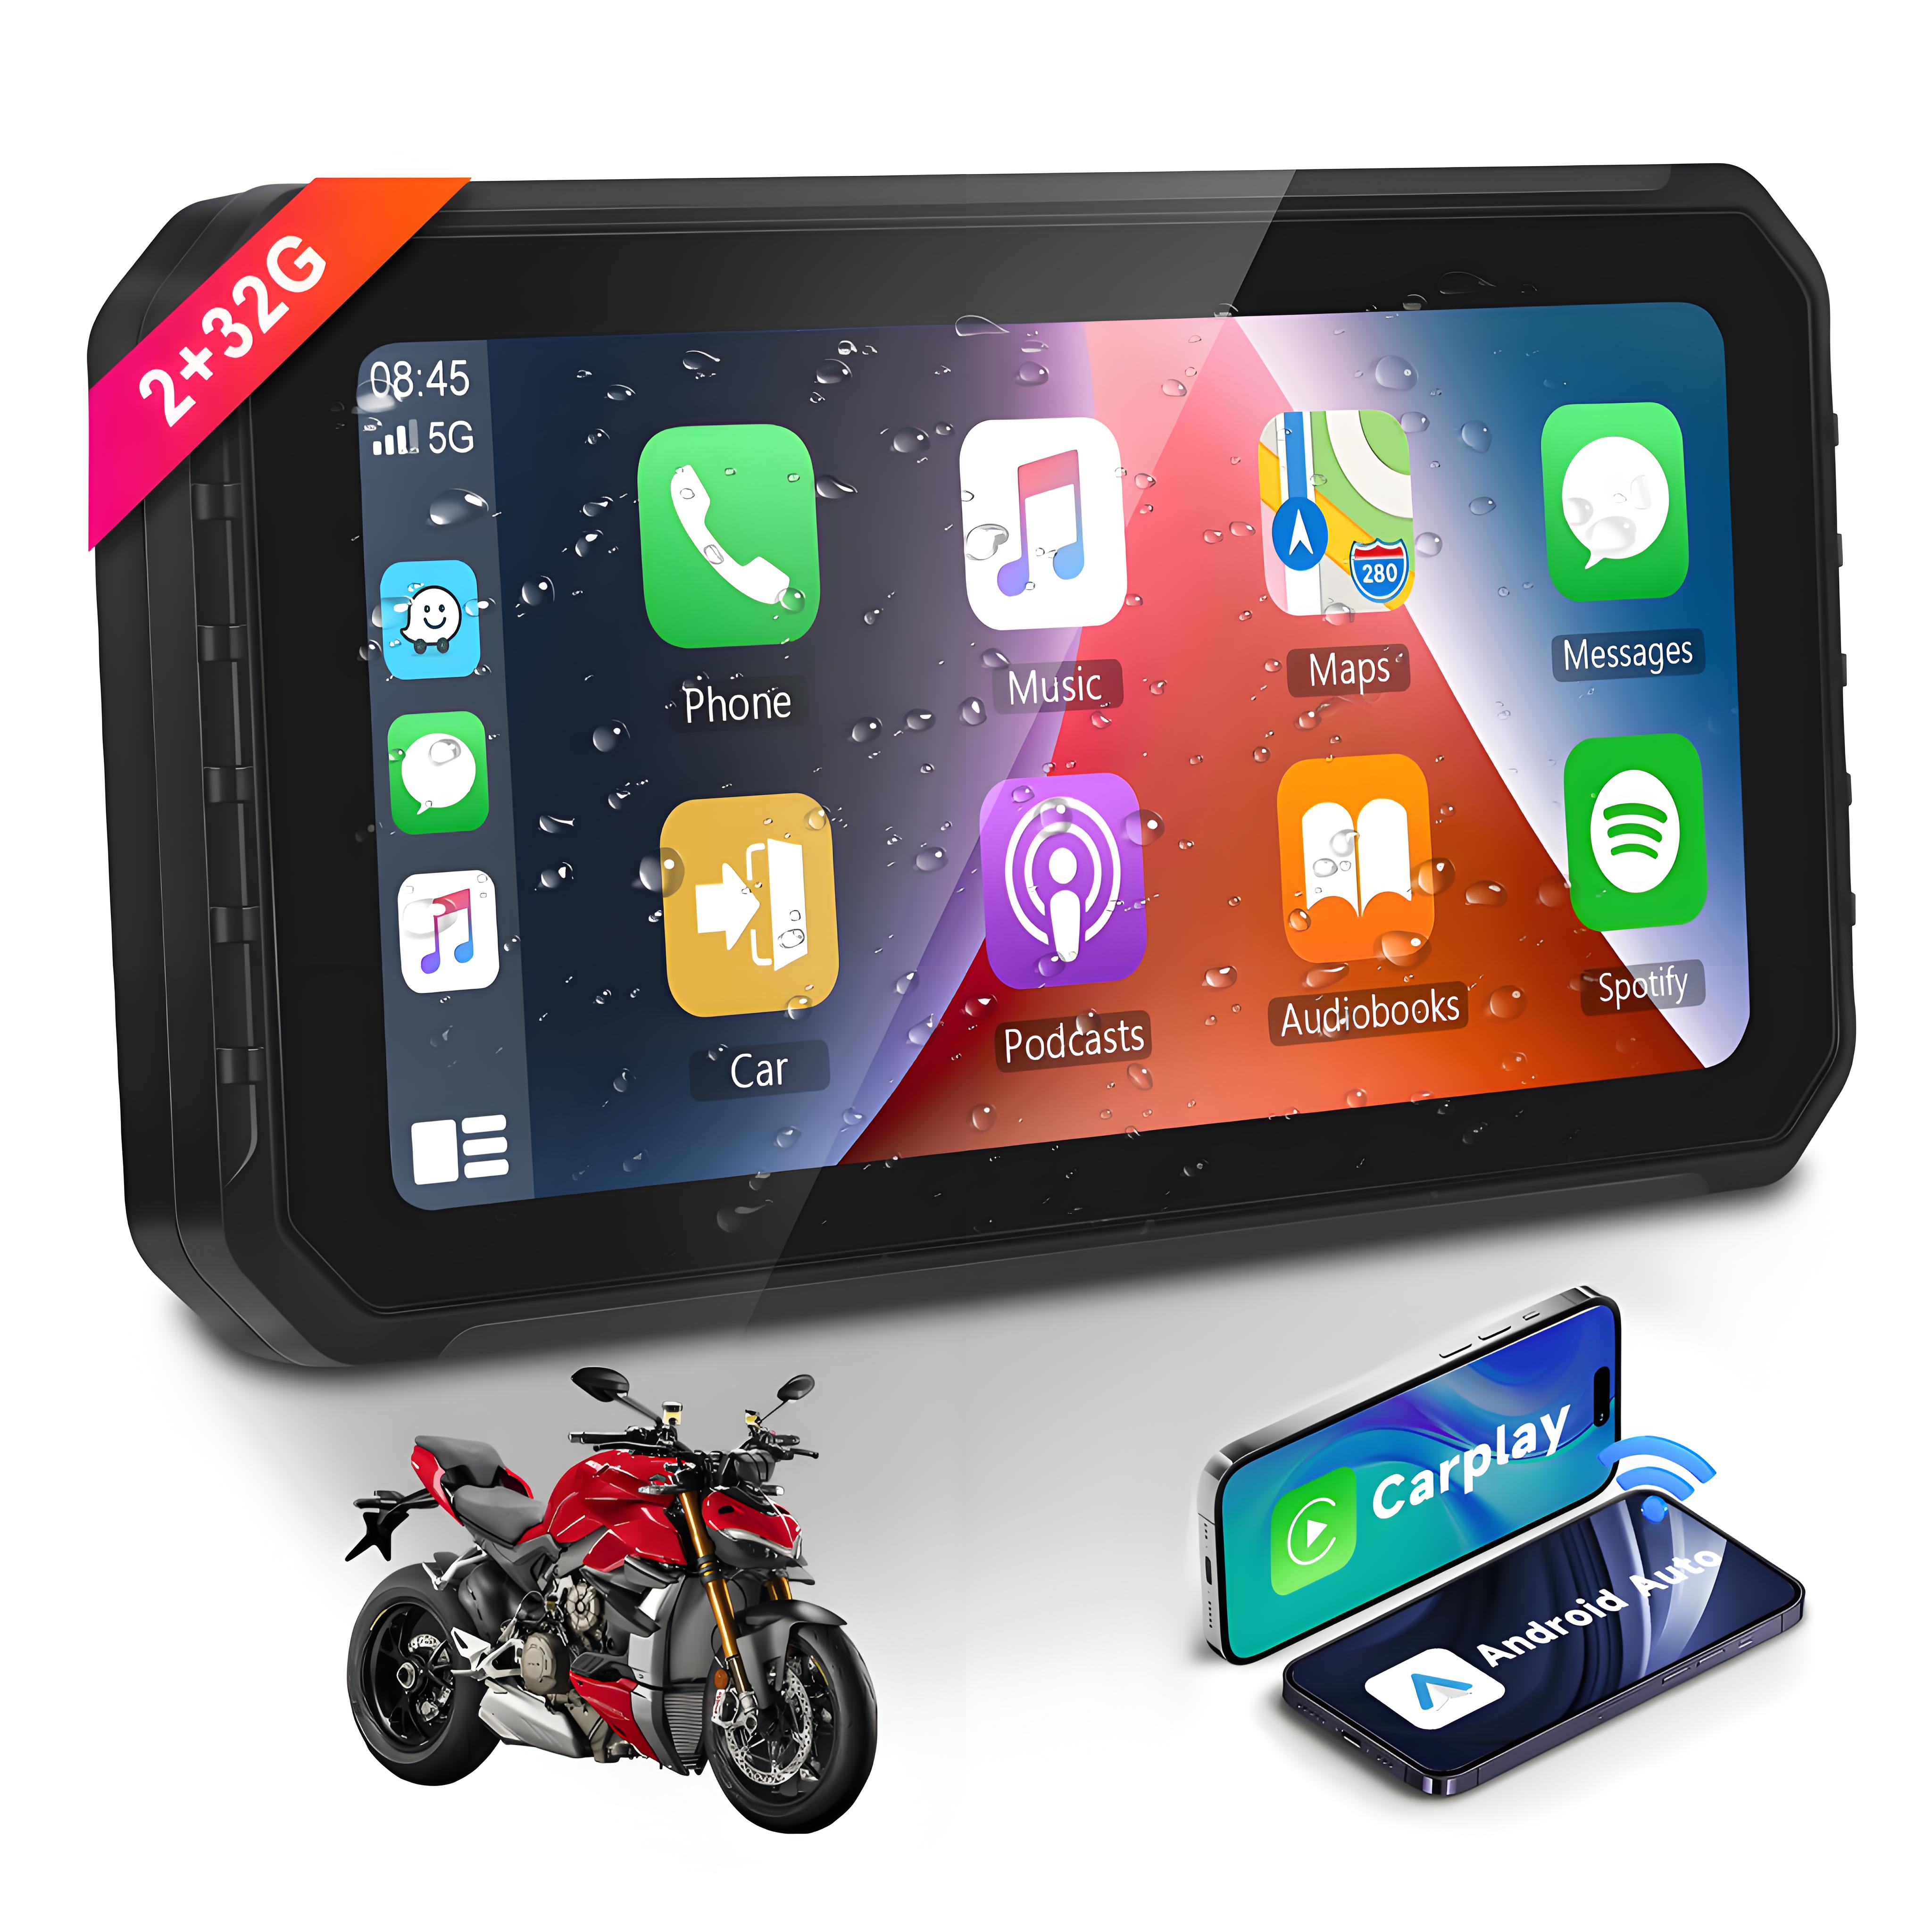 Zmecar 6,2 polegadas Sistema Android 2 + 32GB Portátil Motocicleta Carplay Suporte Sem Fio Carplay Android Auto WIFI Bluetooth Aux TF Card Navegação GPS